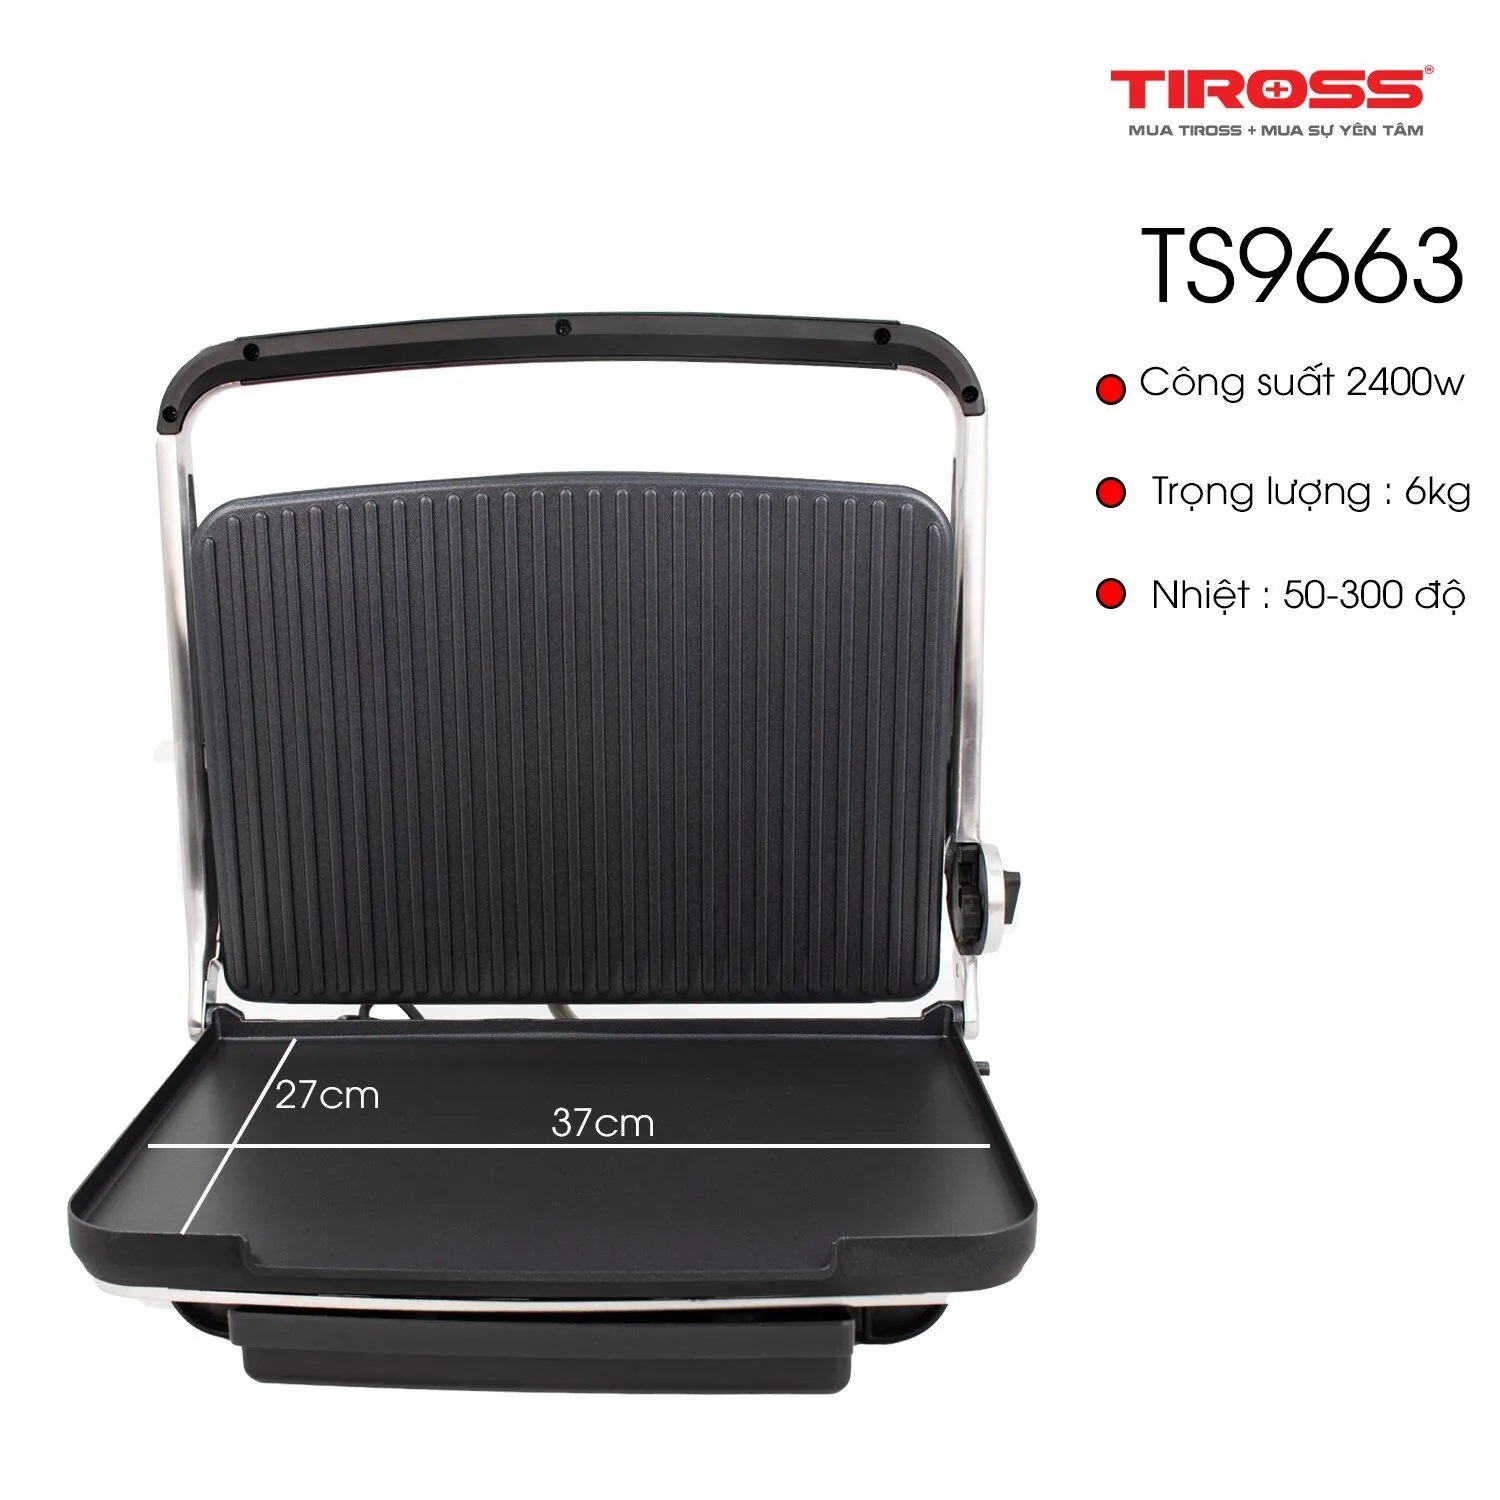 Máy ép nóng bánh mì Tiross TS9663 Công suất 2400W